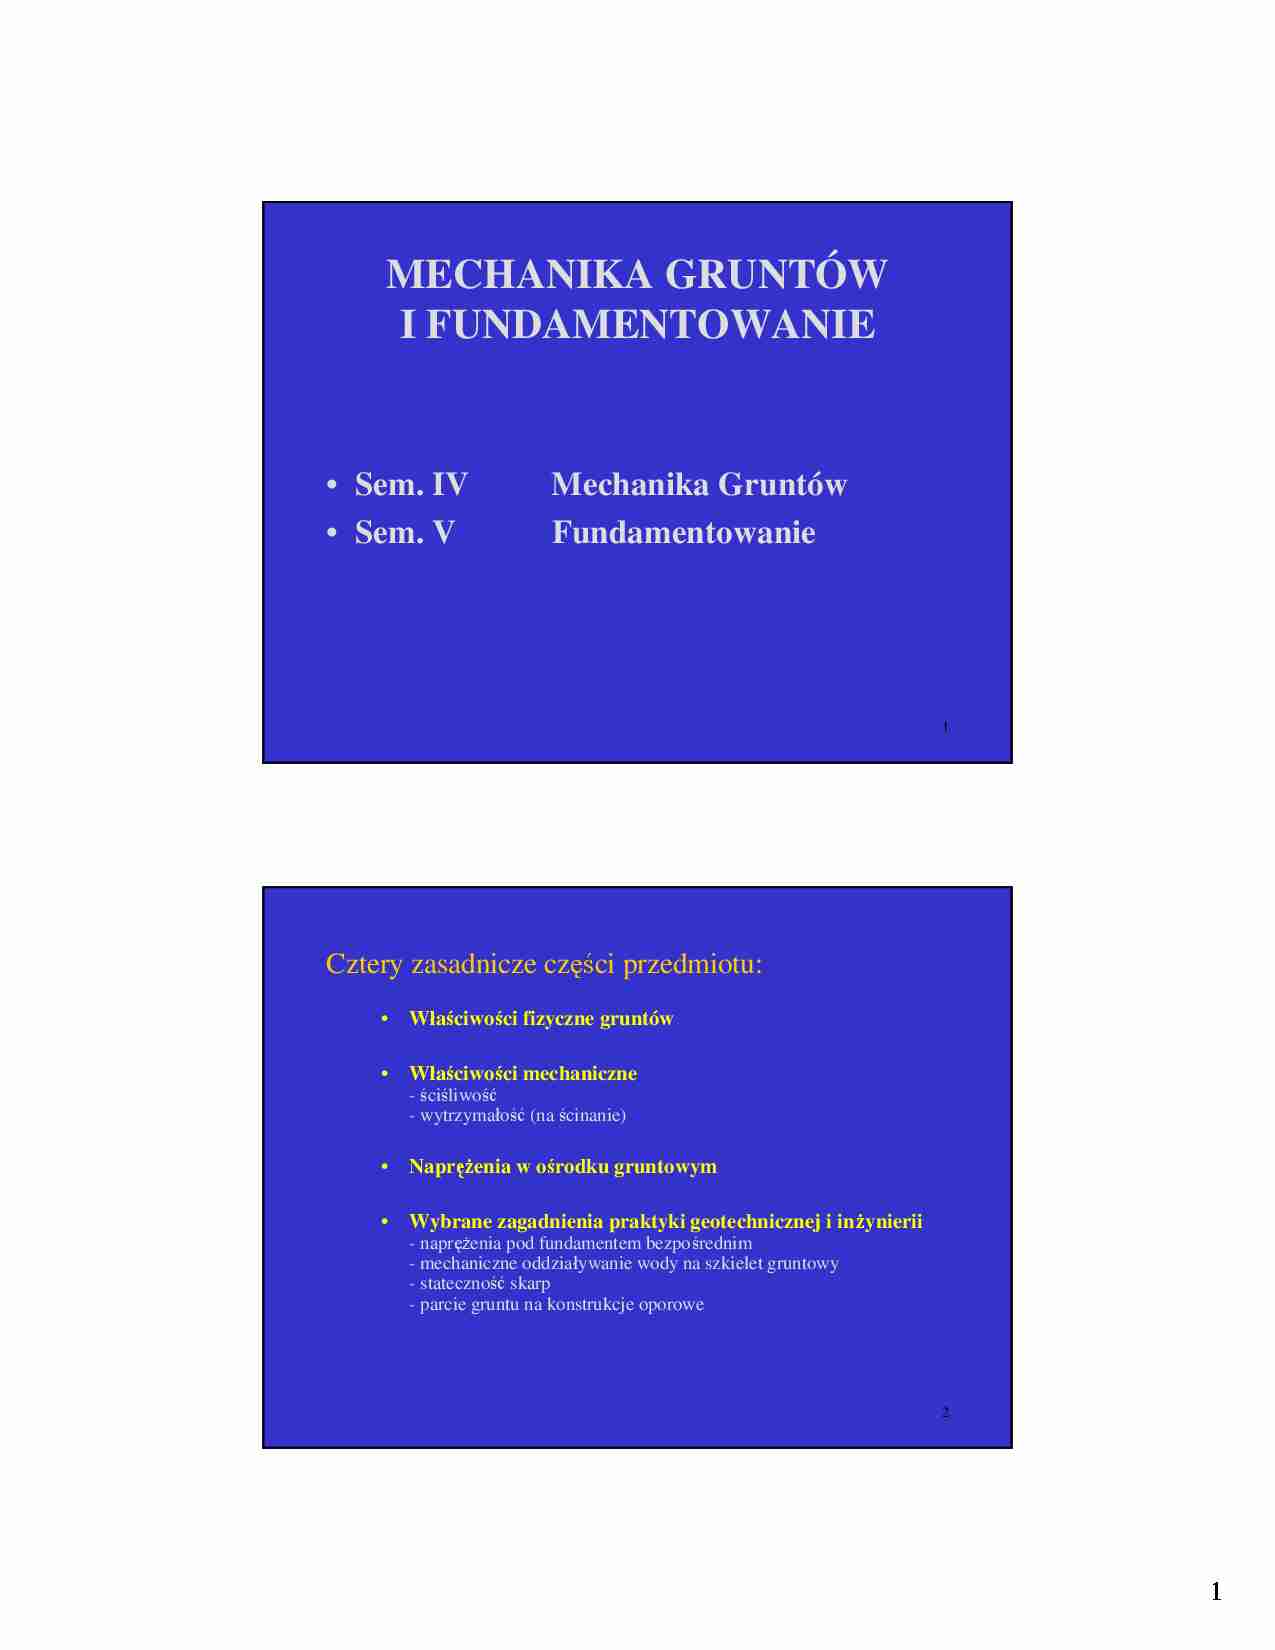 Mechanika gruntów - Wykład 1 - strona 1